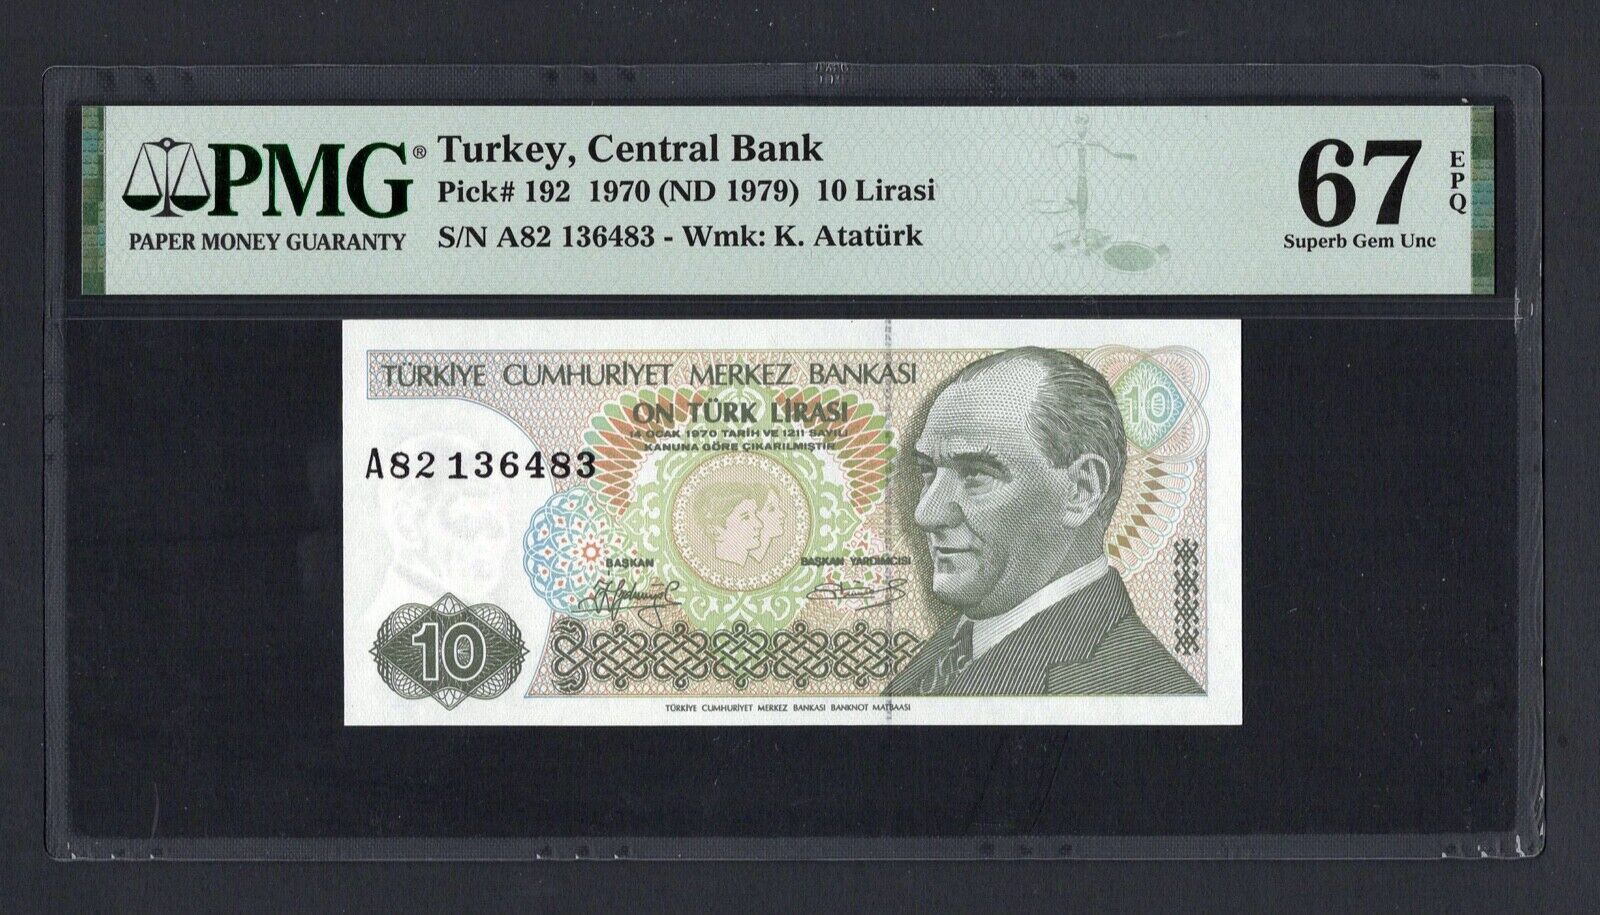 Turkey 10 Lira 1970 (ND 1979) P192 Uncirculated Grade 67